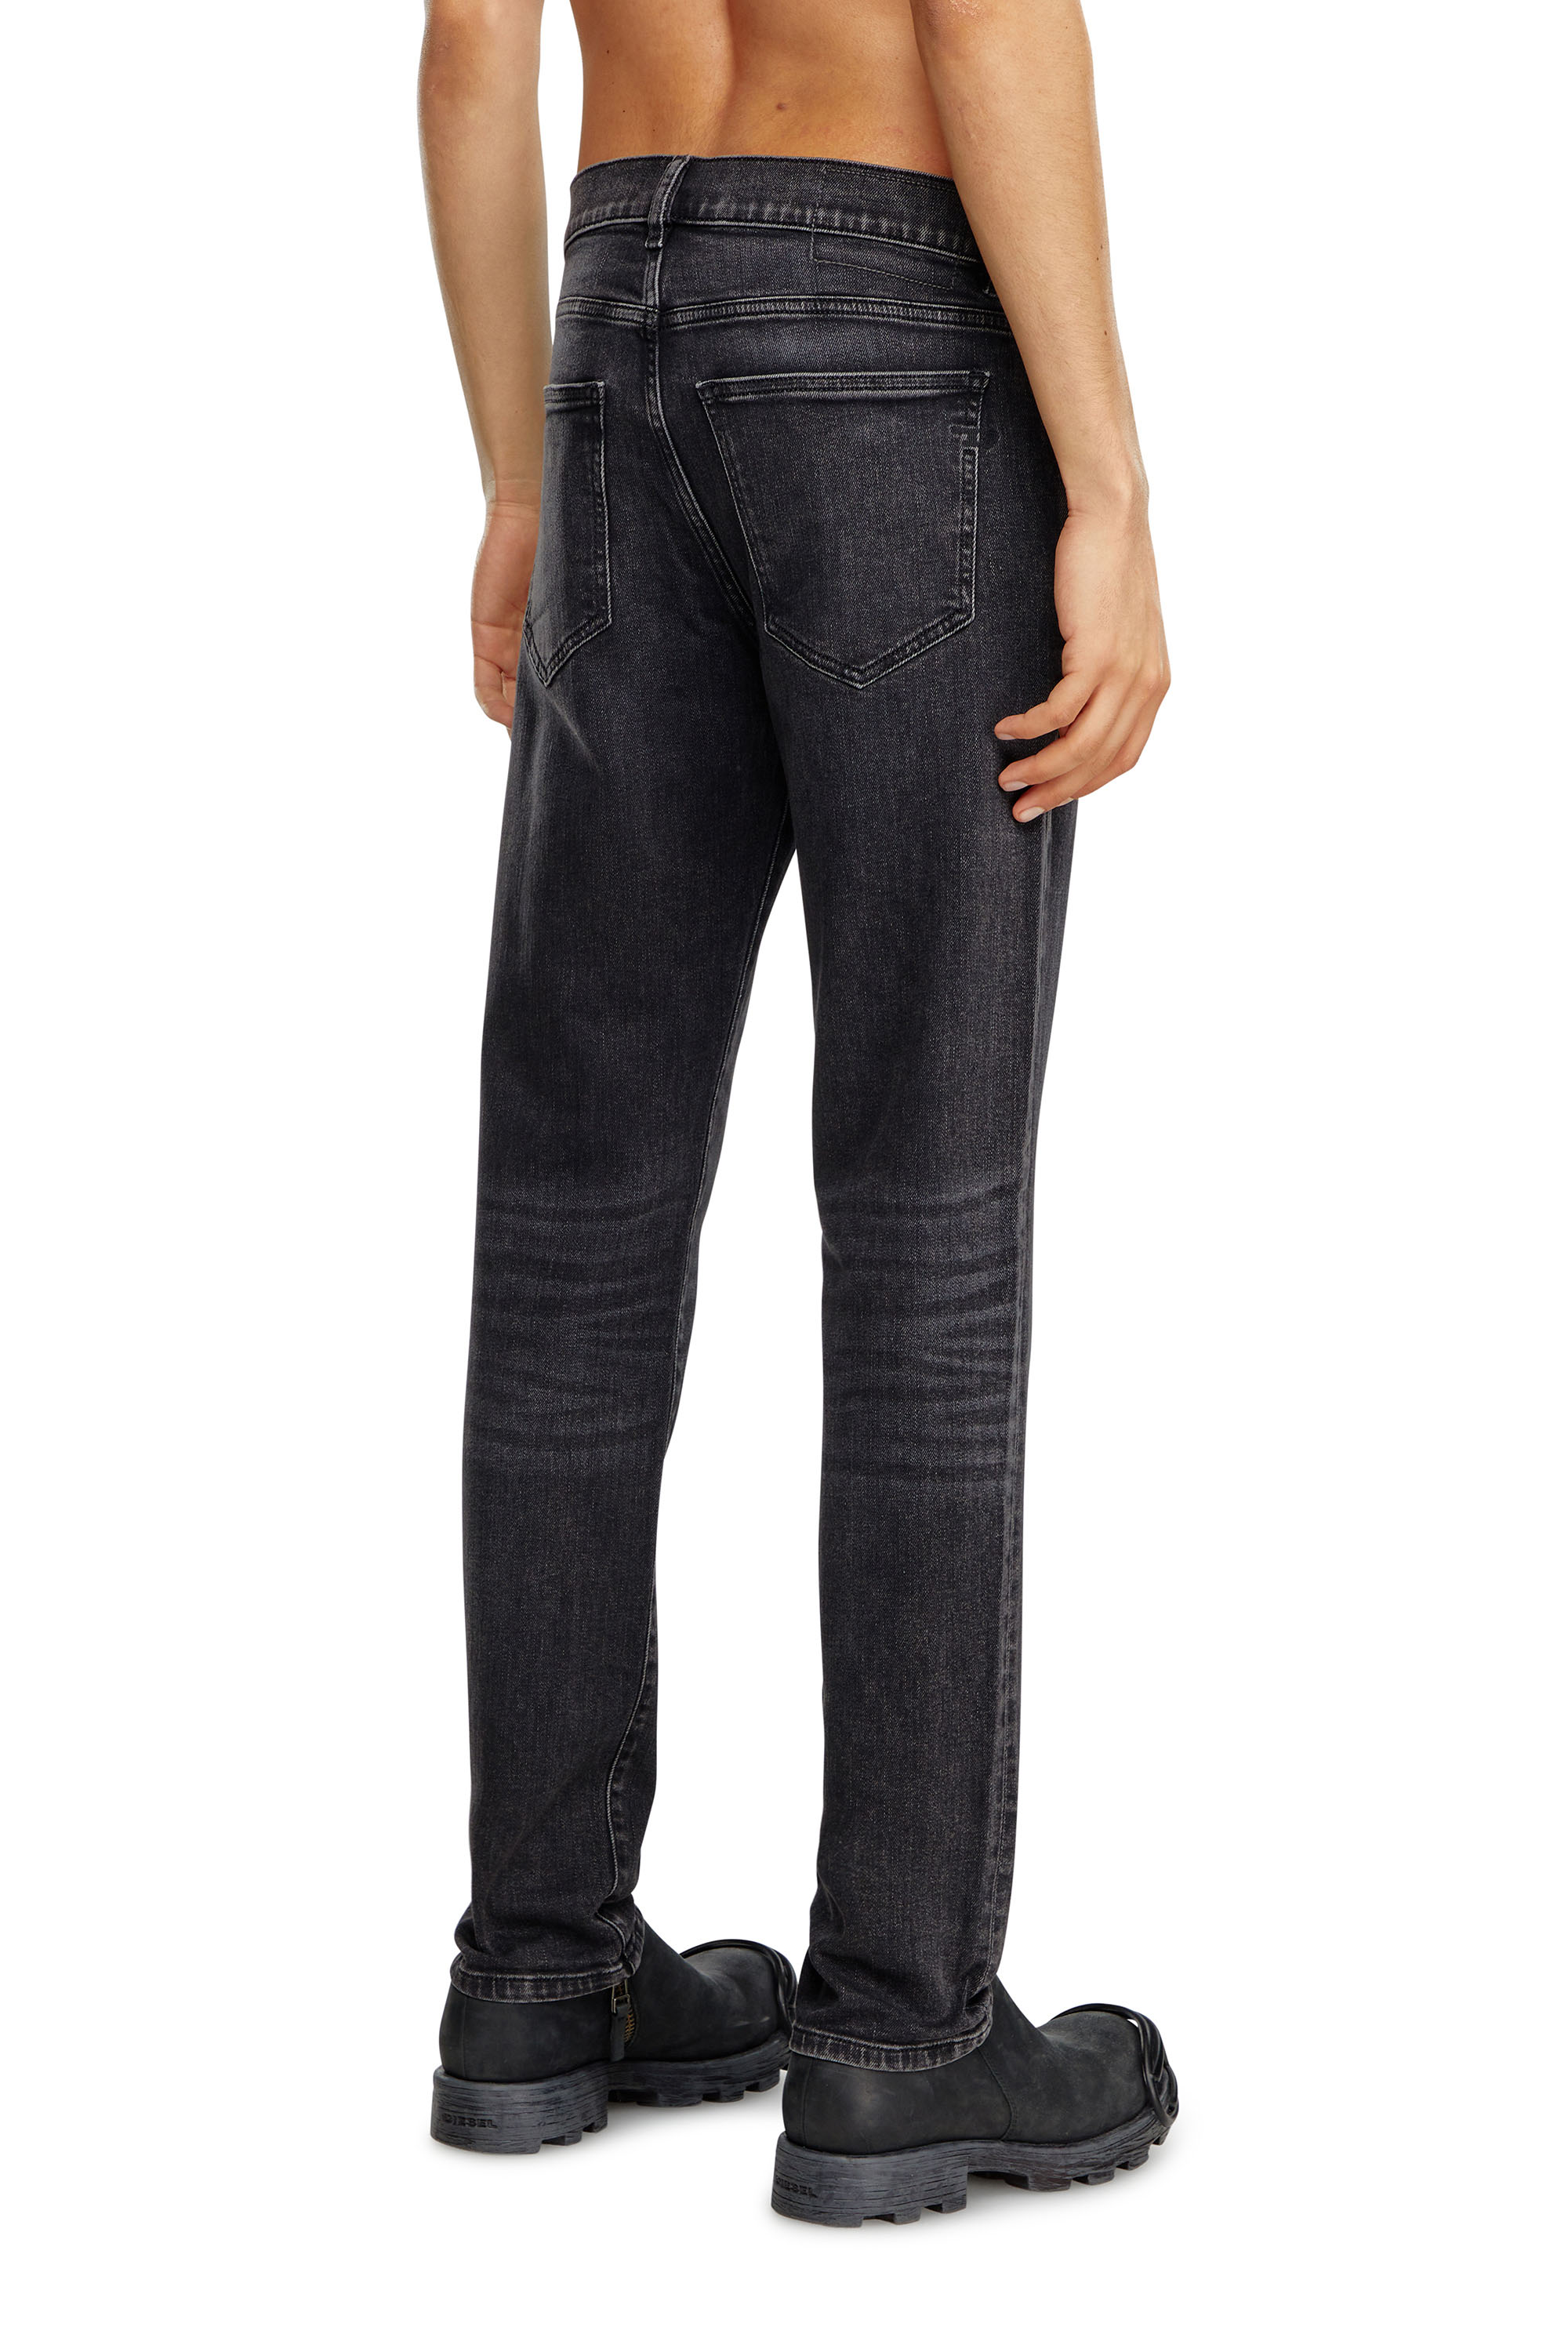 Diesel - Man Slim Jeans 2019 D-Strukt 09B83, Black/Dark grey - Image 3